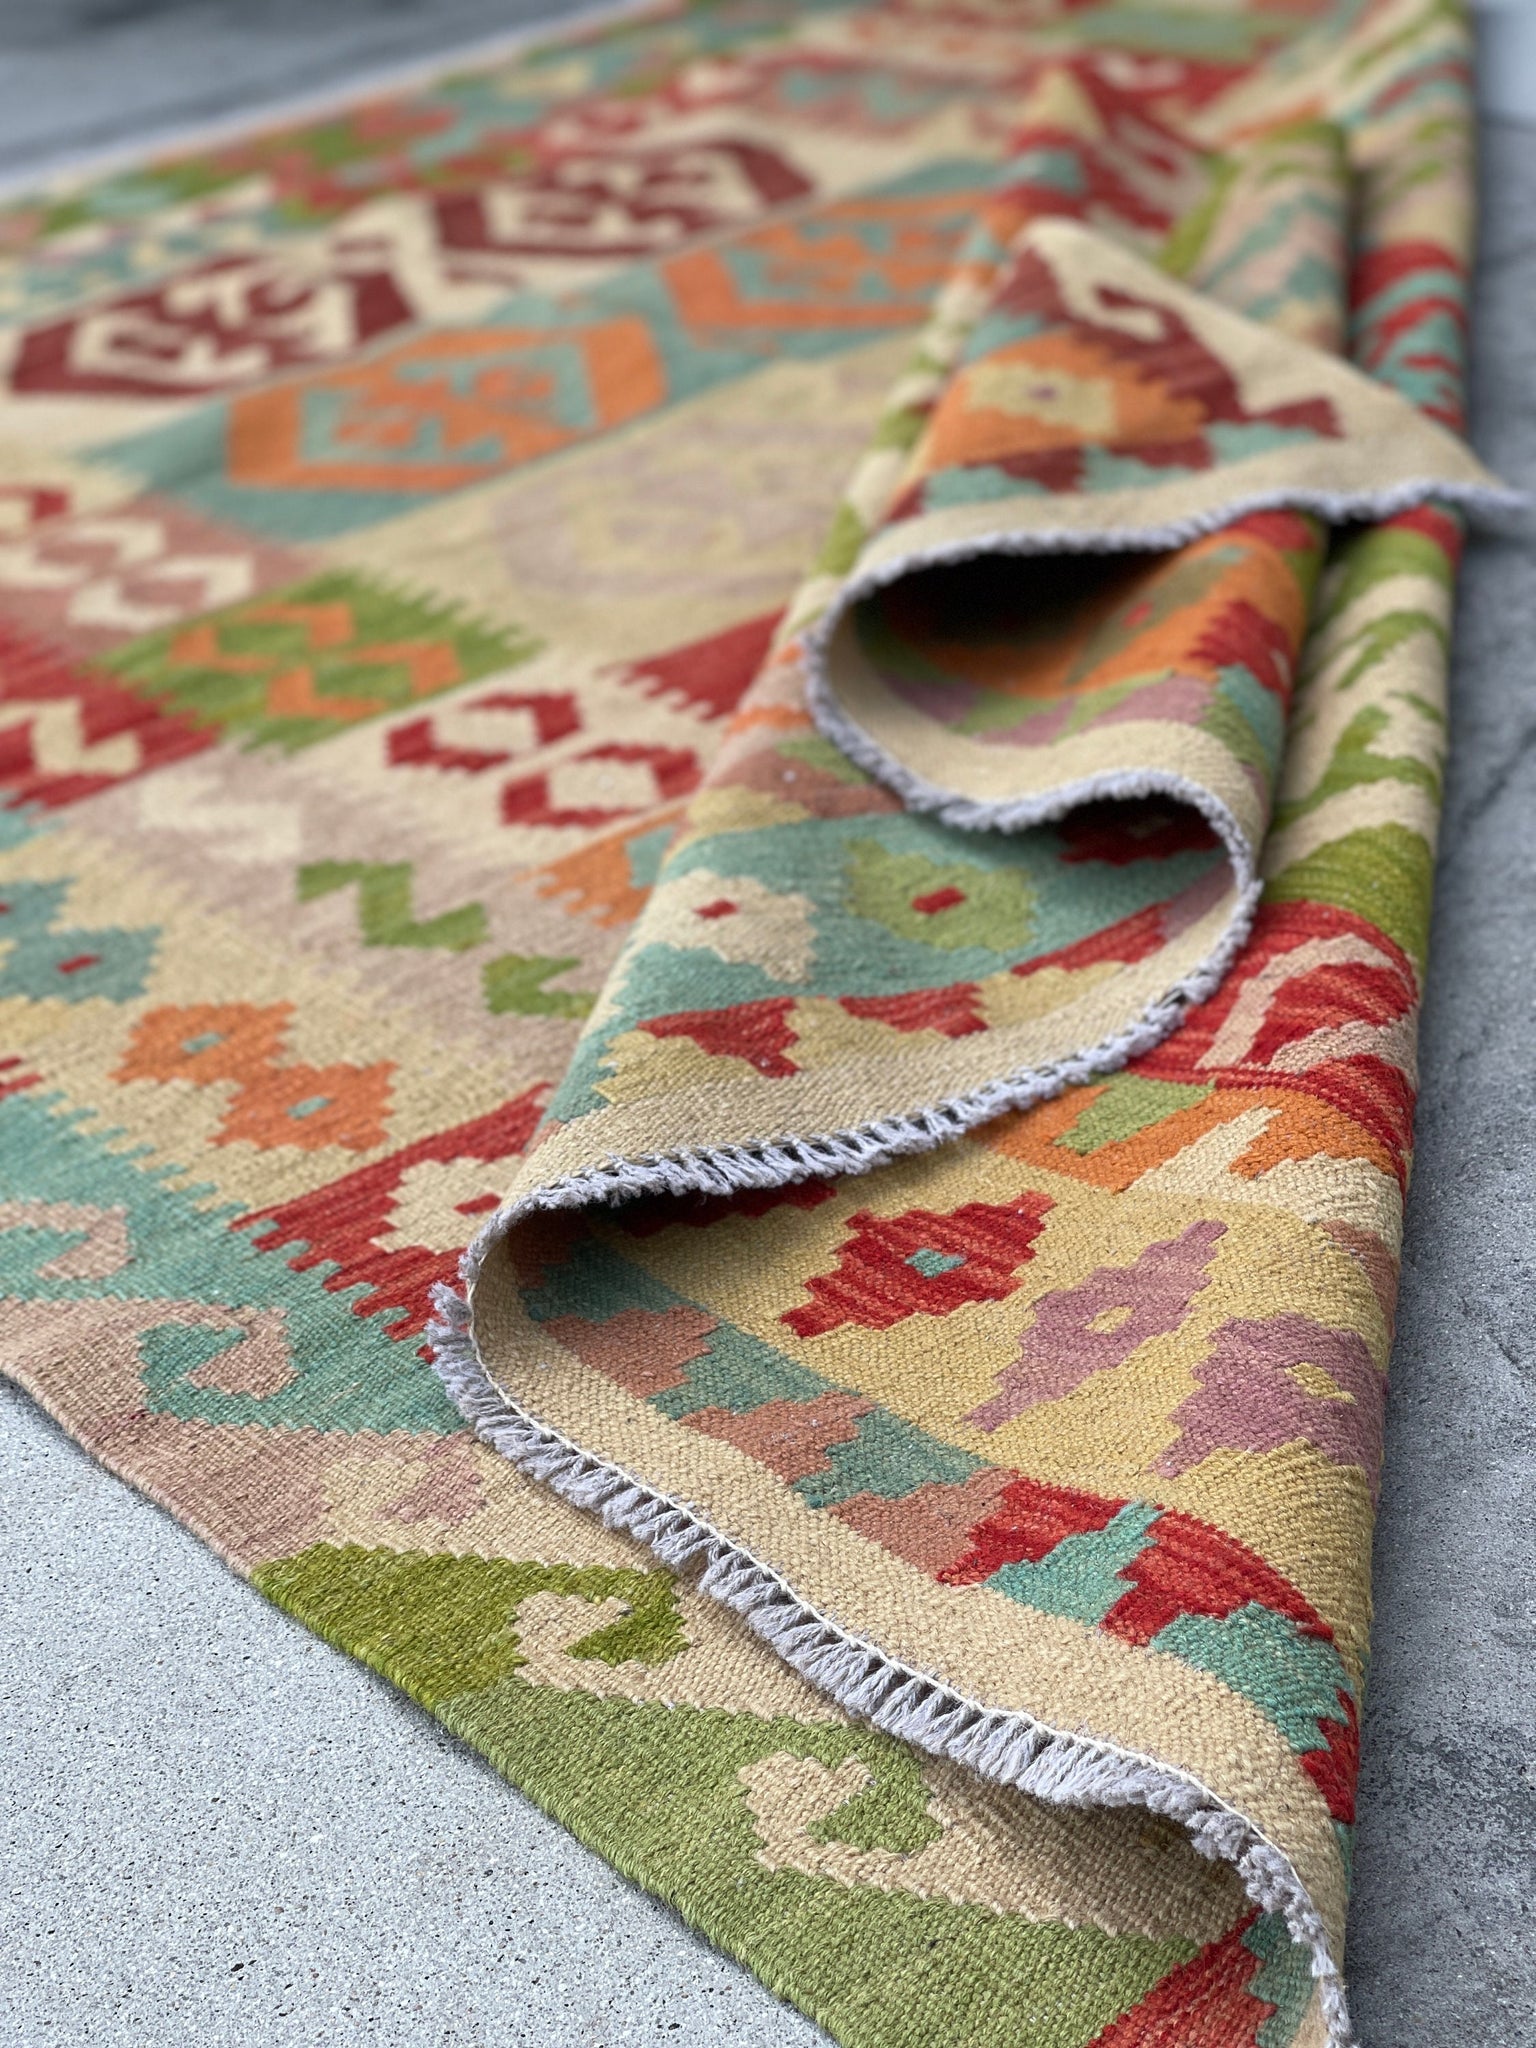 5x7 (150x215) Handmade Afghan Kilim Rug | Beige Orange Green Sky Blue Pink | Flatweave Boho Tribal Turkish Moroccan Oriental Wool Outdoor